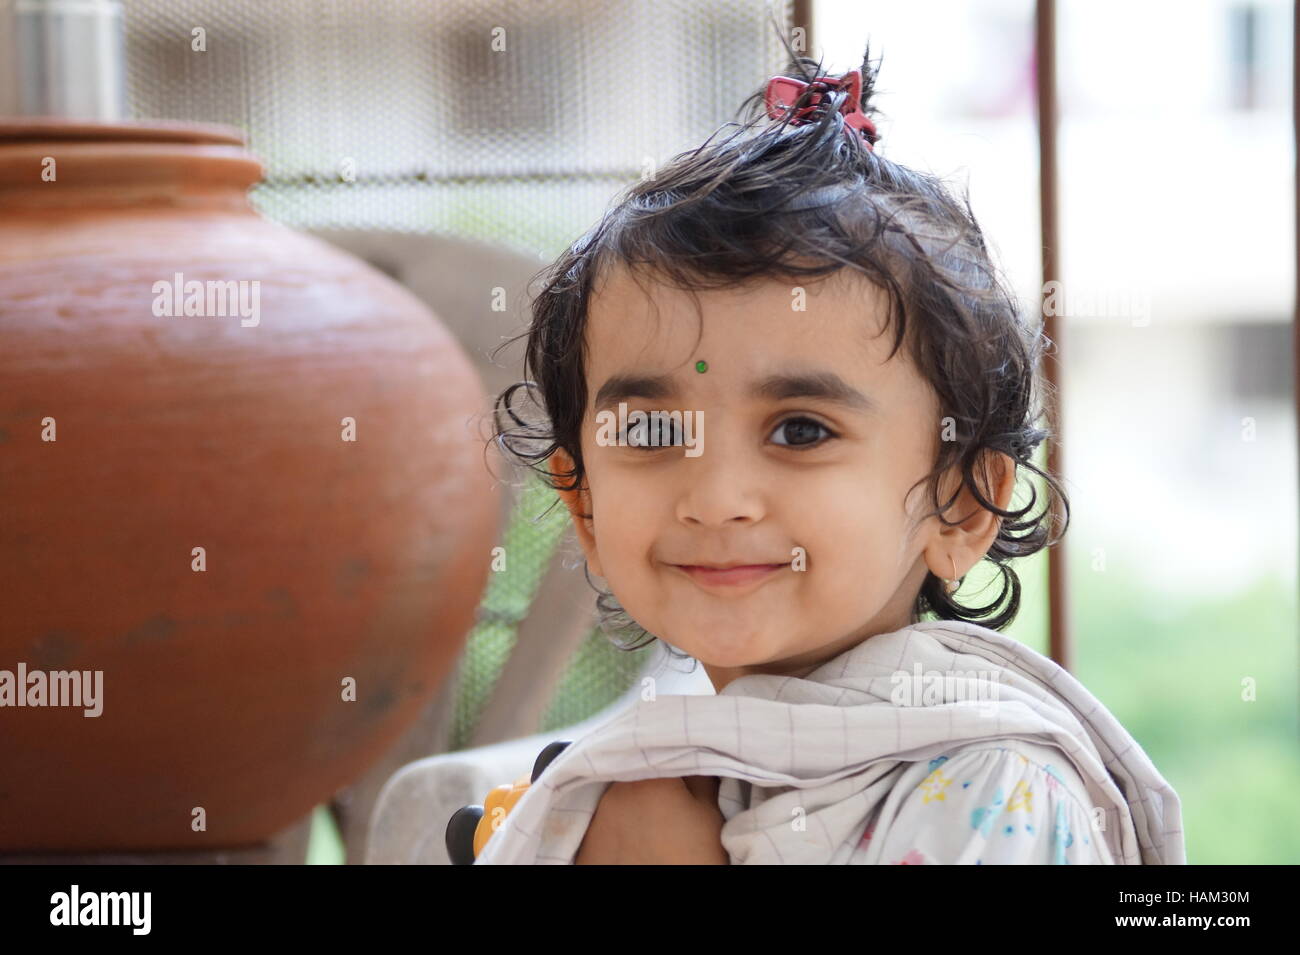 Ein nettes Mädchen, Porträt von inderin, indische Kinder, Smiley-Gesicht, glücklich Leben, schönes portrait Stockfoto